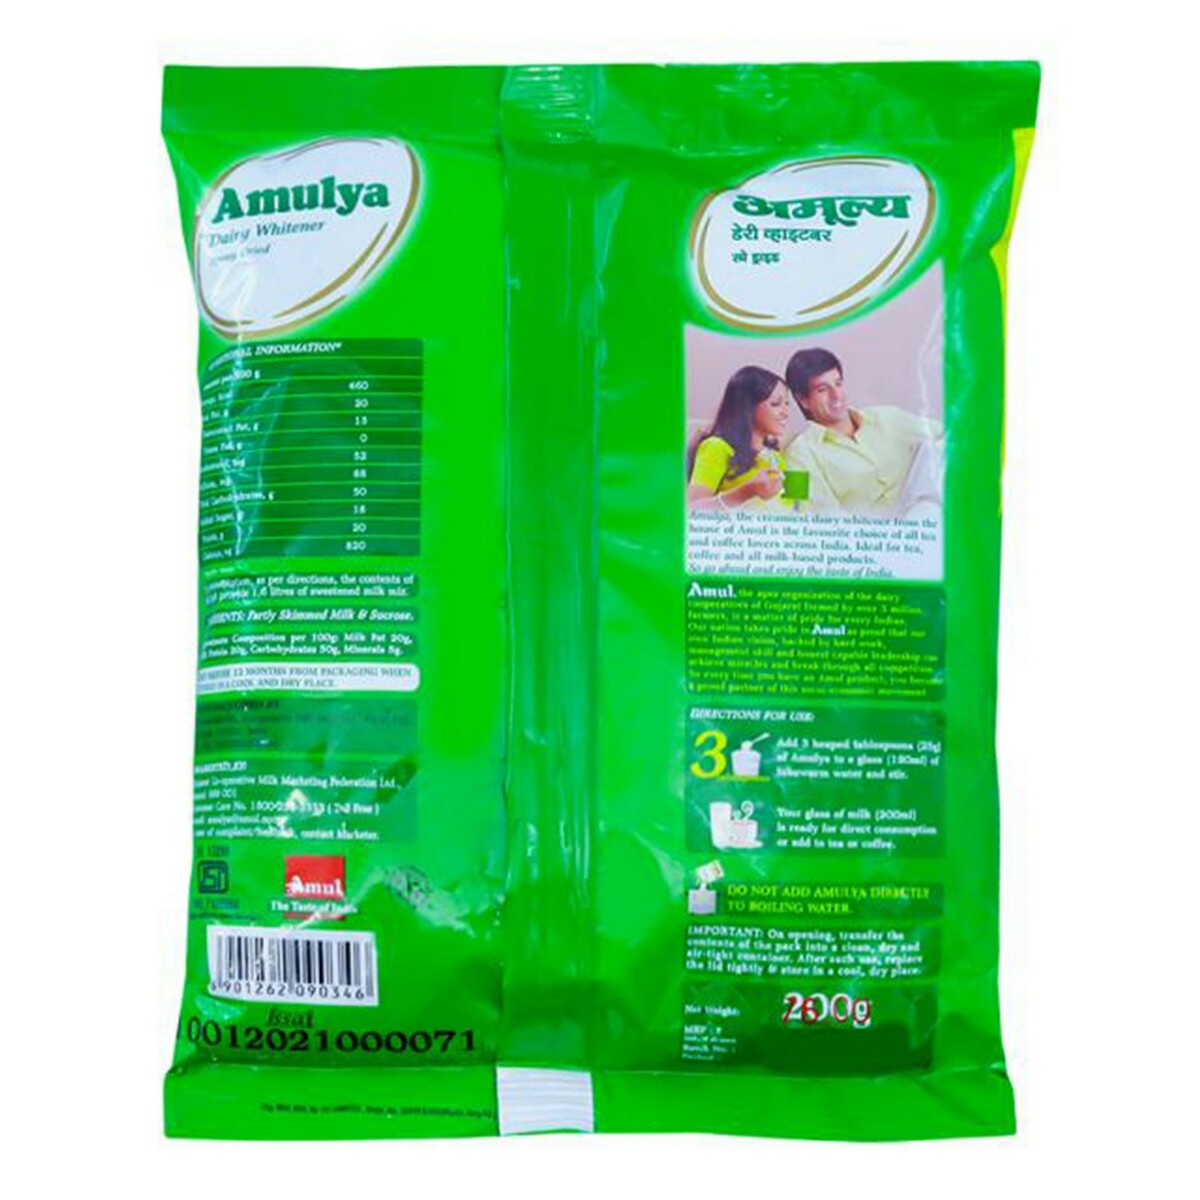 Amulya Milk Powder Pouch 200g